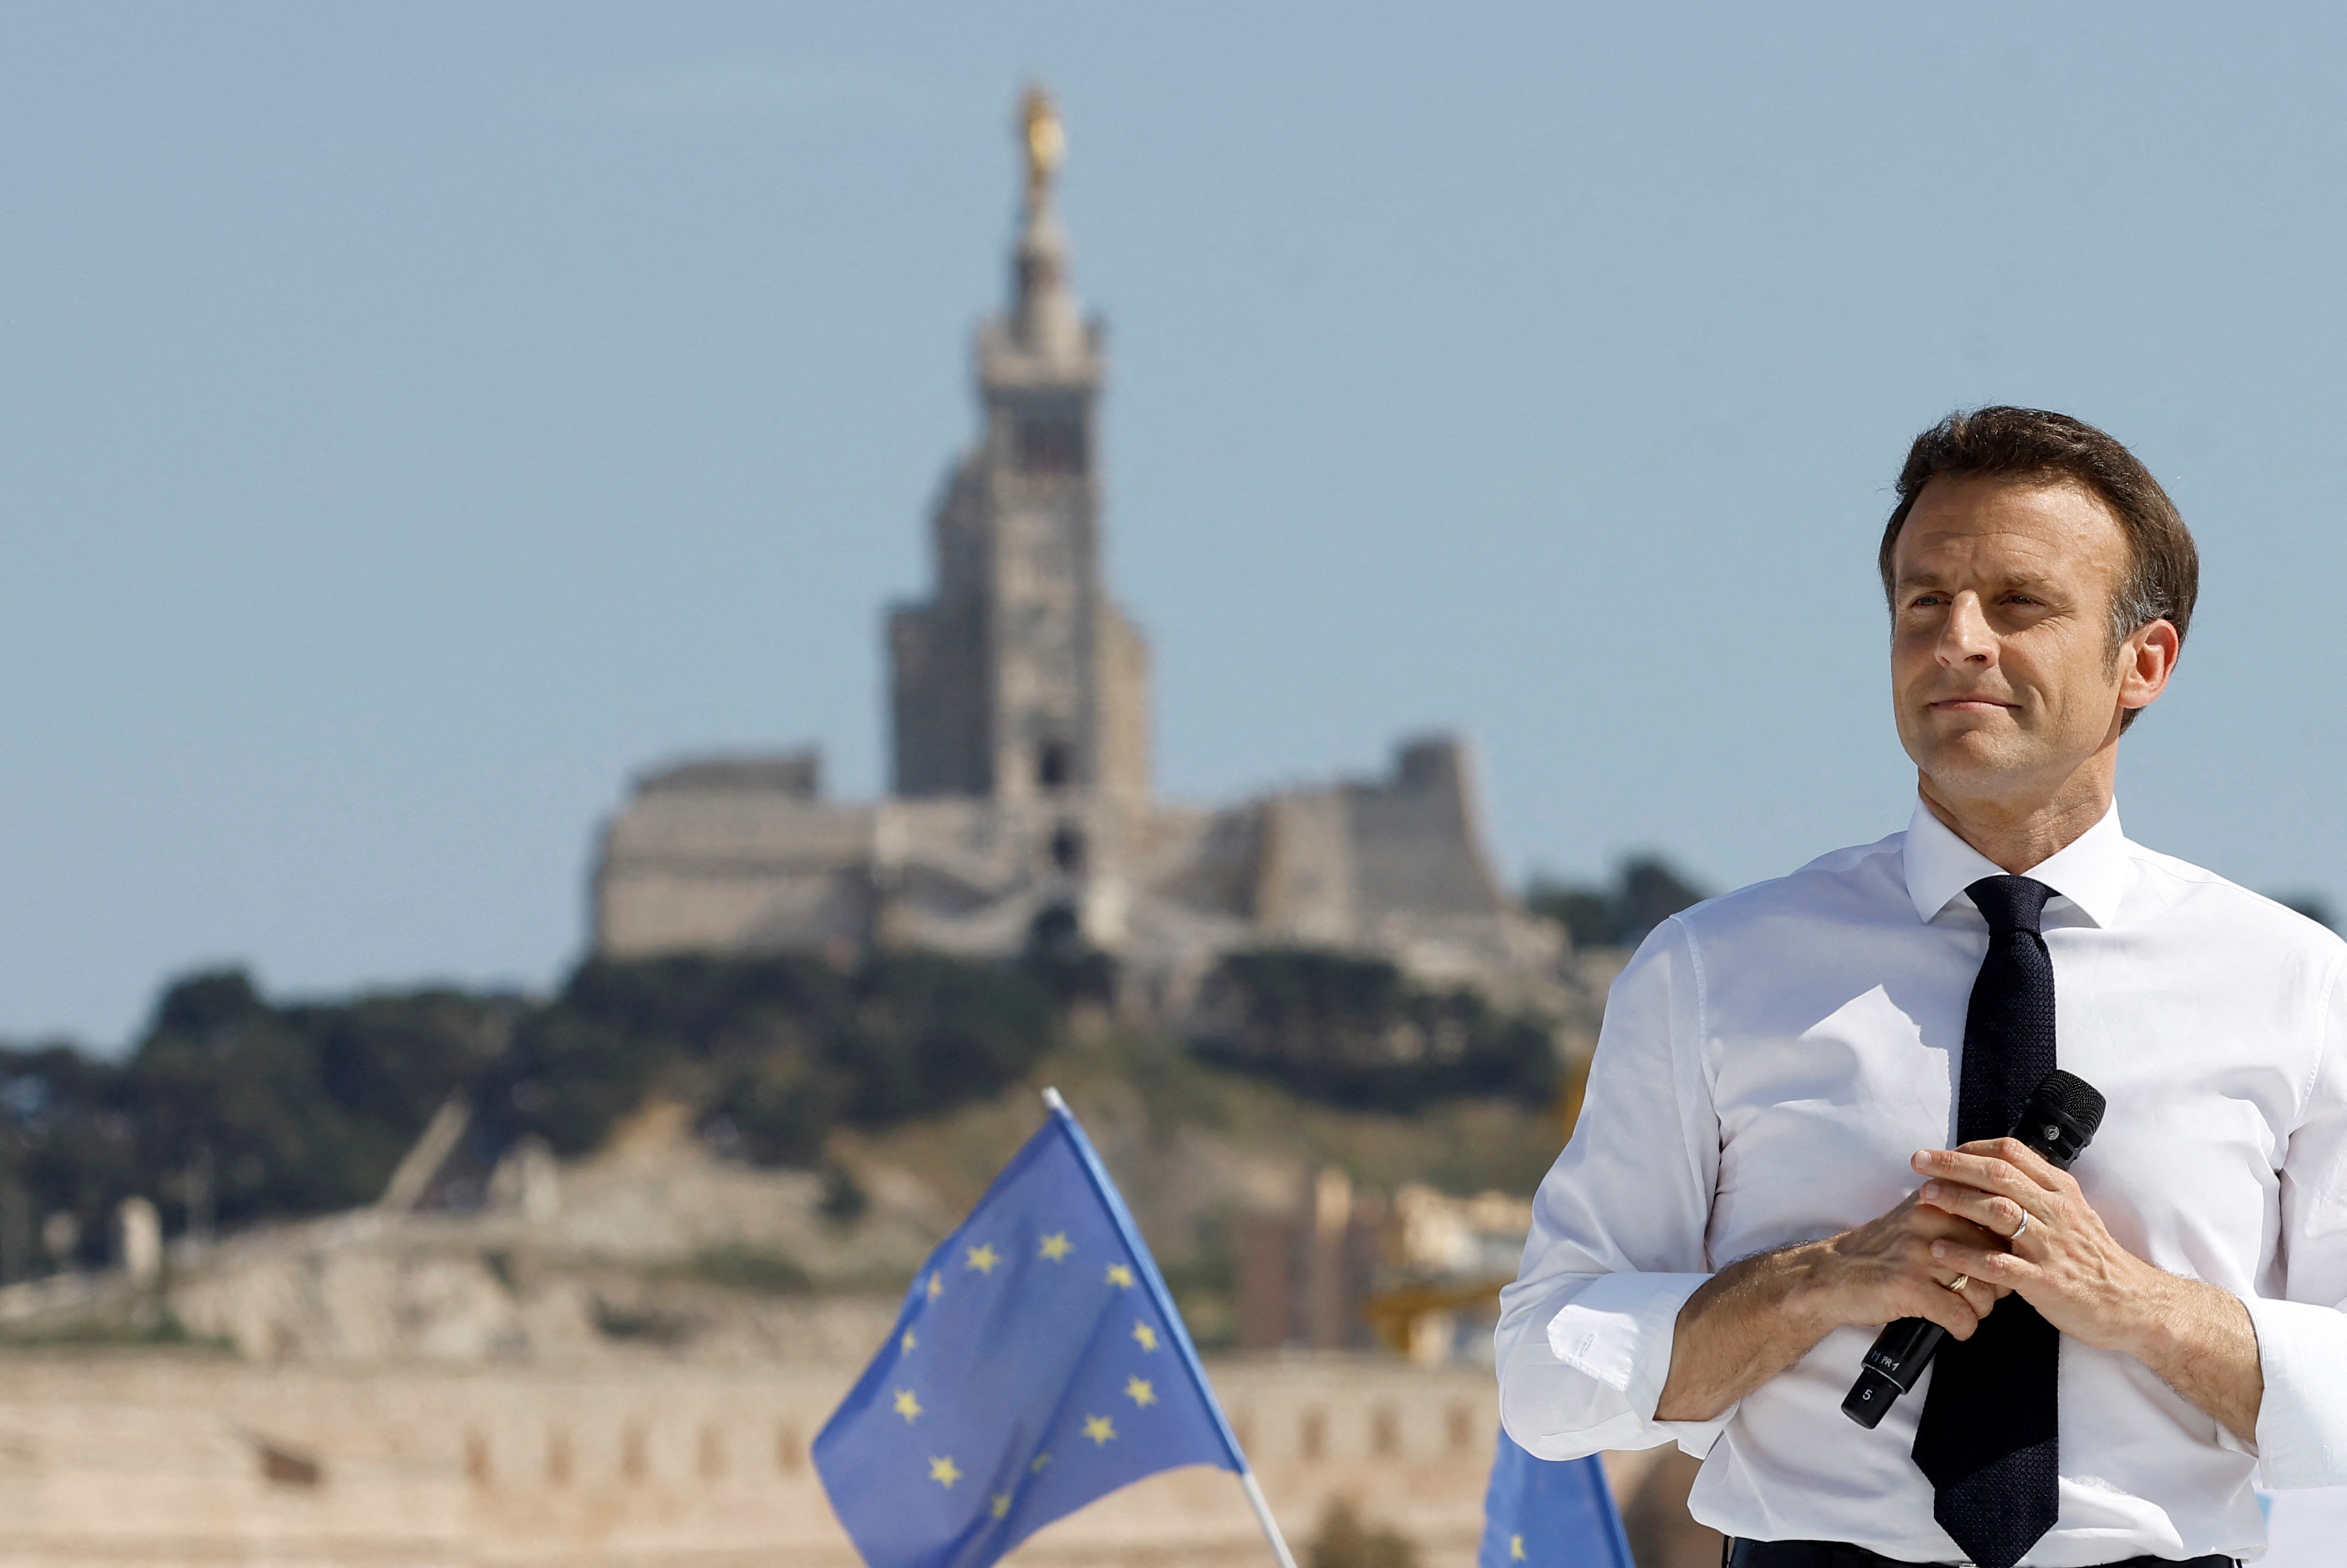 Le président Emmanuel Macron est en tête des sondages quelques jours avant les élections françaises (REUTERS / Christian Hartmann)